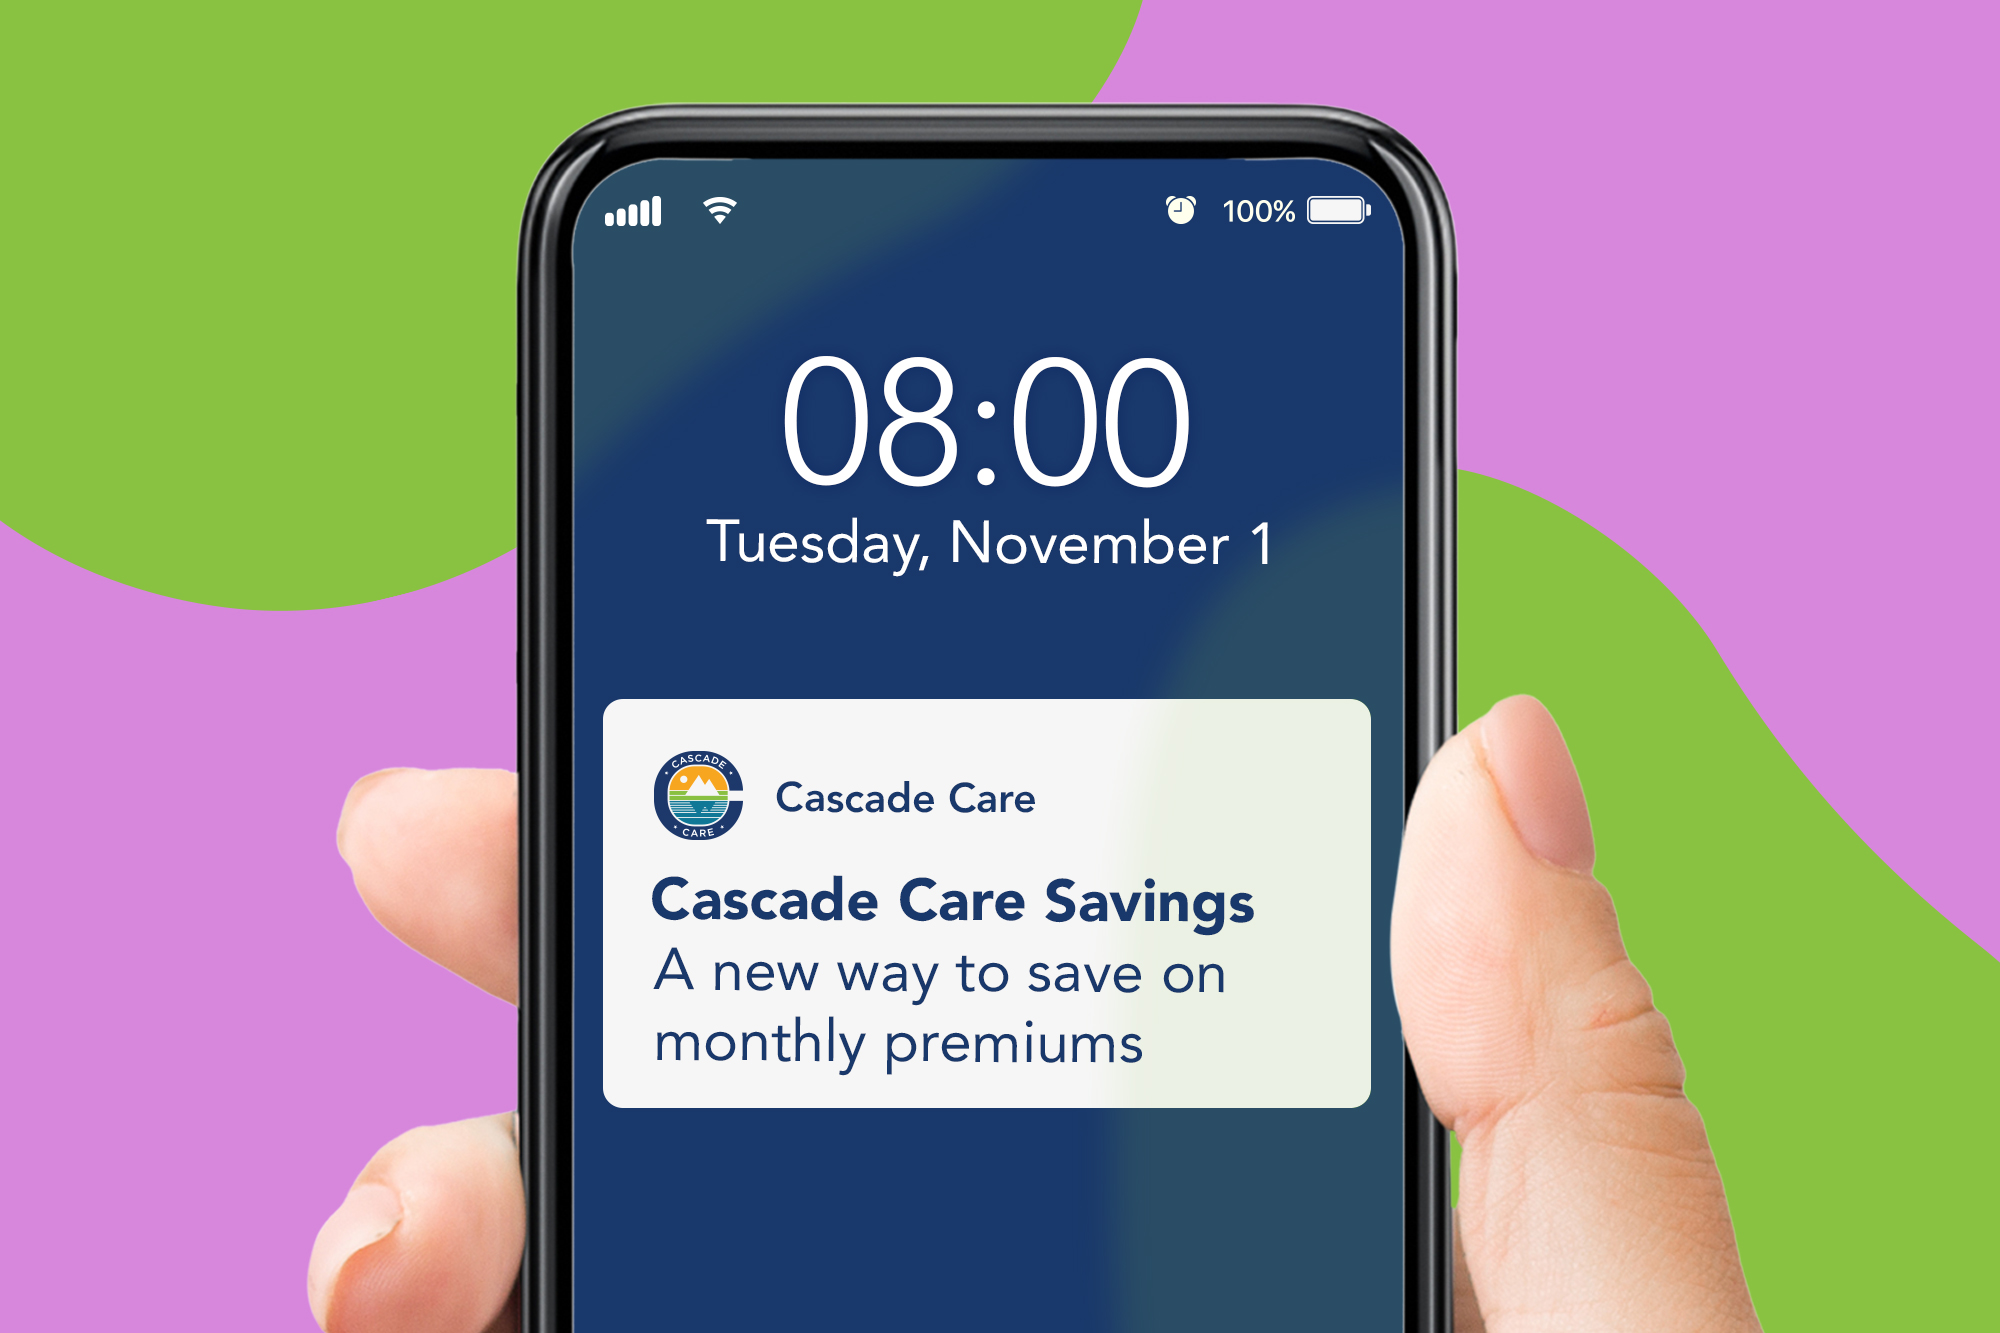 Una mano sosteniendo un teléfono inteligente sobre un fondo verde y lavanda. En la pantalla, una notificación dice: "Cascade Care Savings: una nueva forma de ahorrar en las primas mensuales".